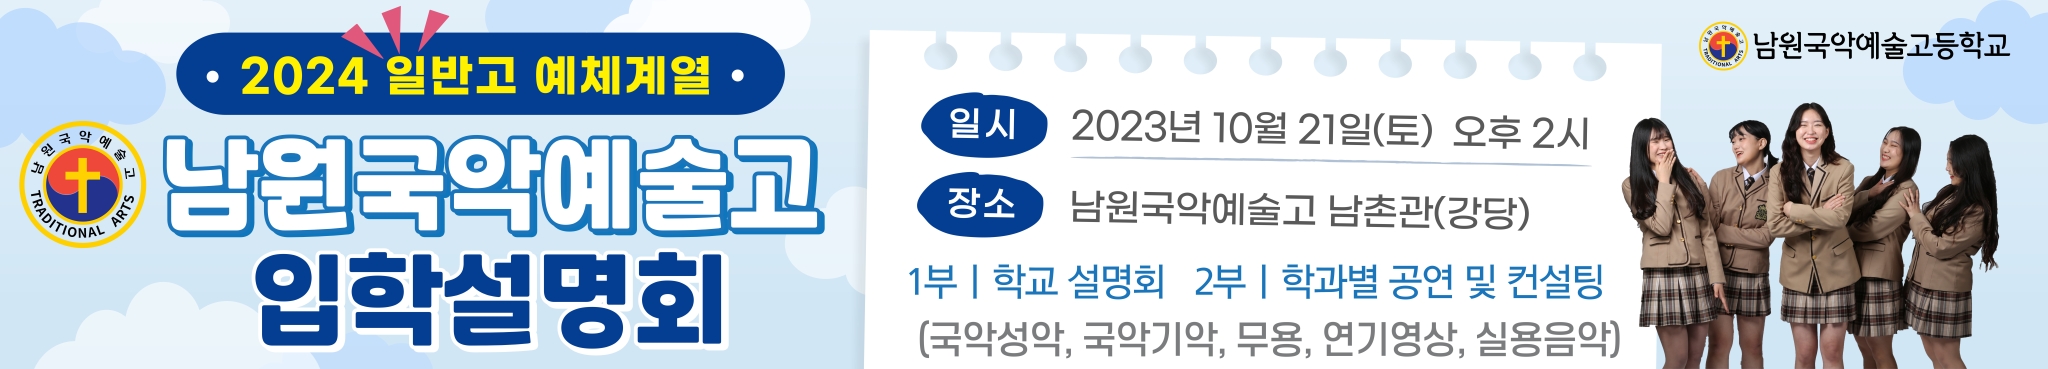 입학설명회-플랜카드-최최종(23.9.11.)